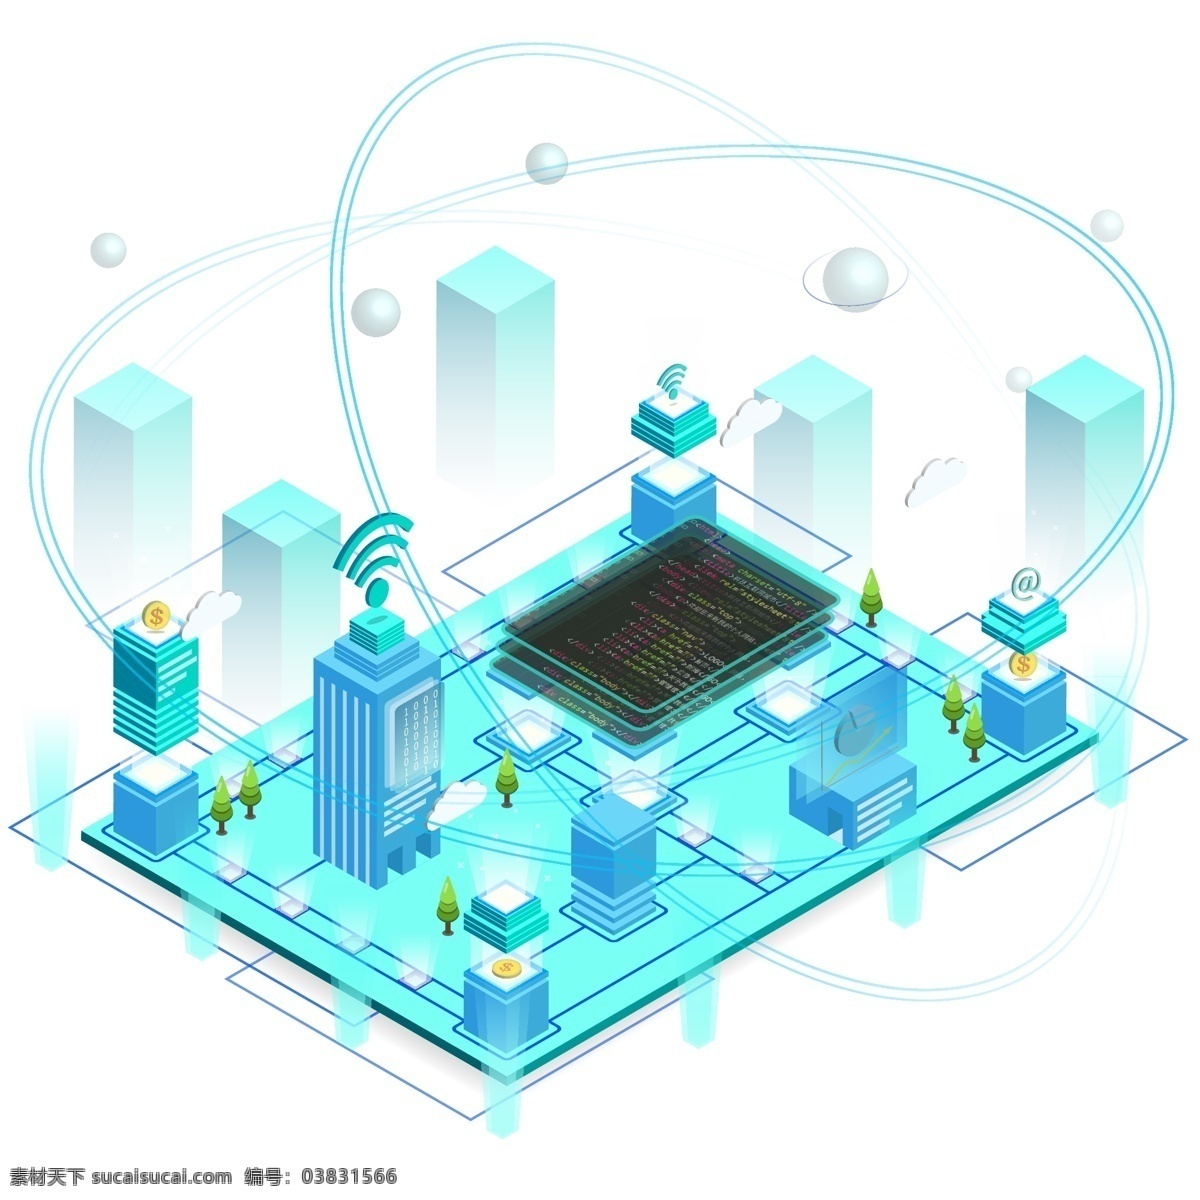 d 科技 互联网 城市 网络 数据 程序 代码 建筑 科技感 2.5d 科技城市 未来城市 信号 通信 通讯 大数据 信息传递 城市管网 资源输送 智慧城市